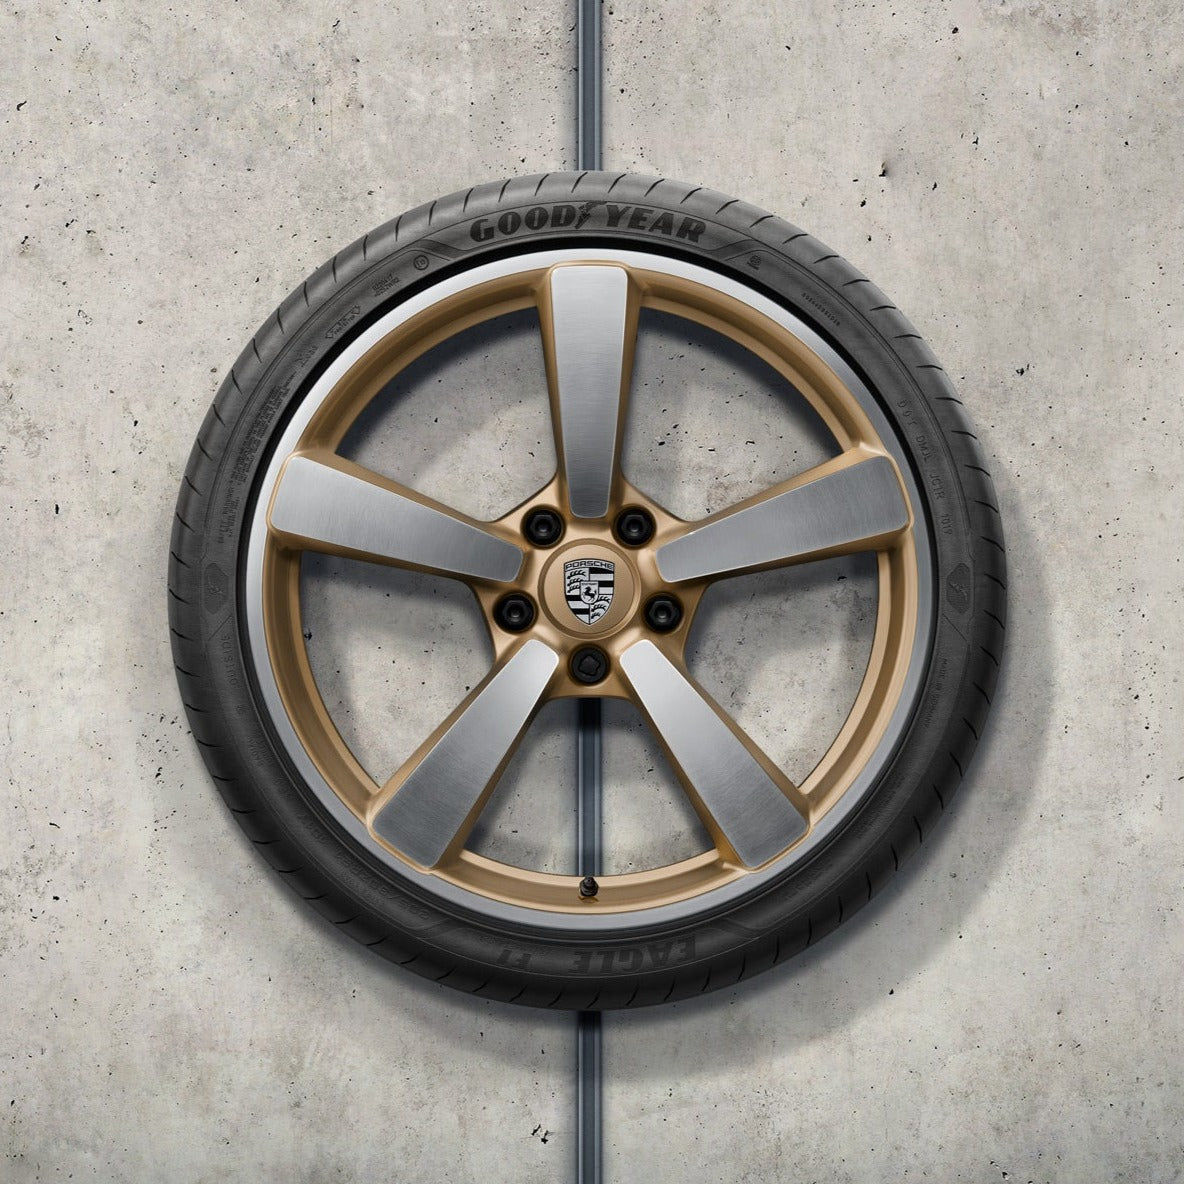 20/21" Carrera Exclusive Design Summer Wheel & Tire Set (in Aurum) - 992